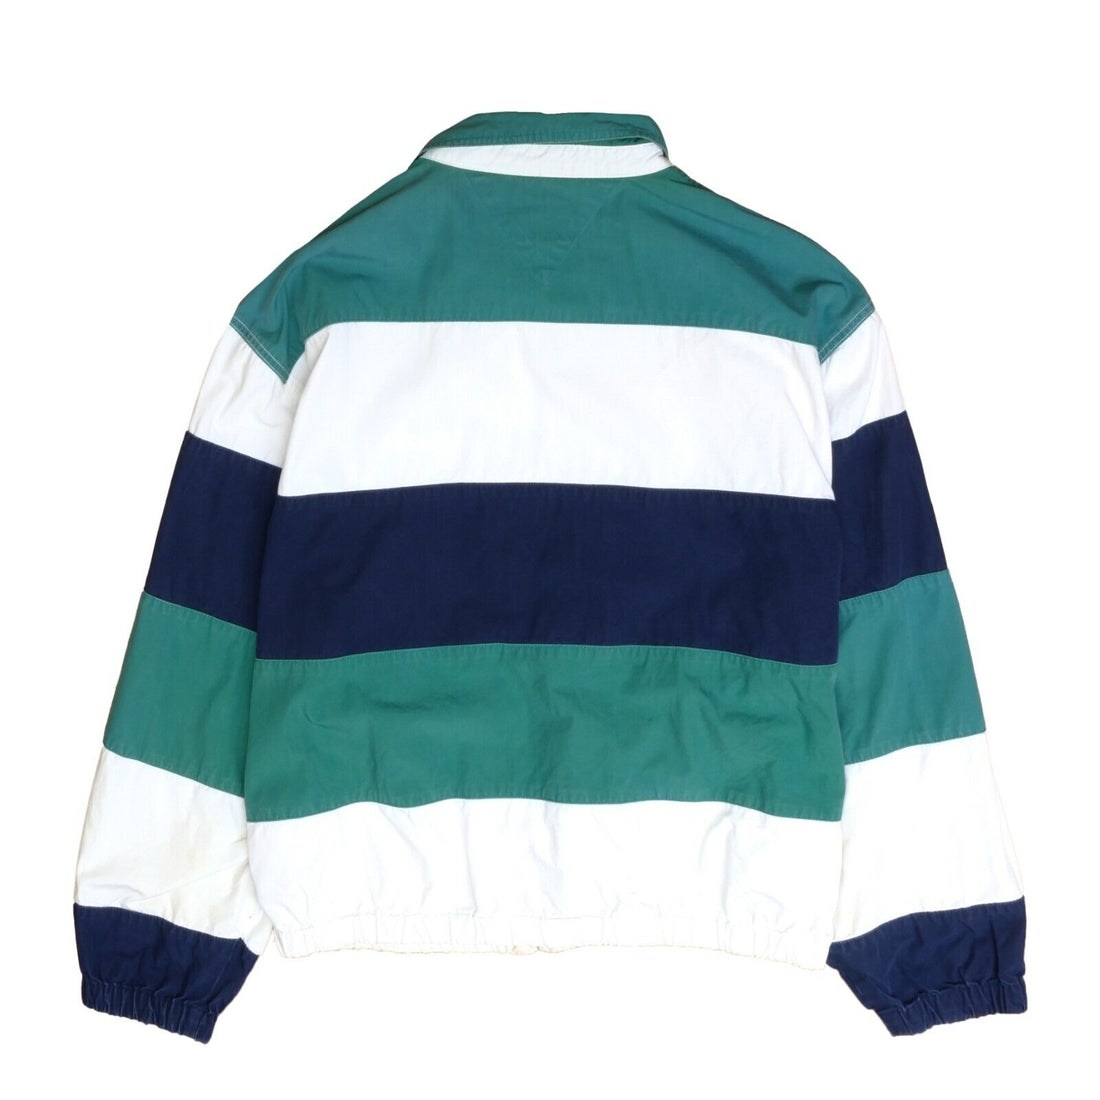 Vintage Tommy Hilfiger Light Jacket Size XL Striped Sailing Embroidered